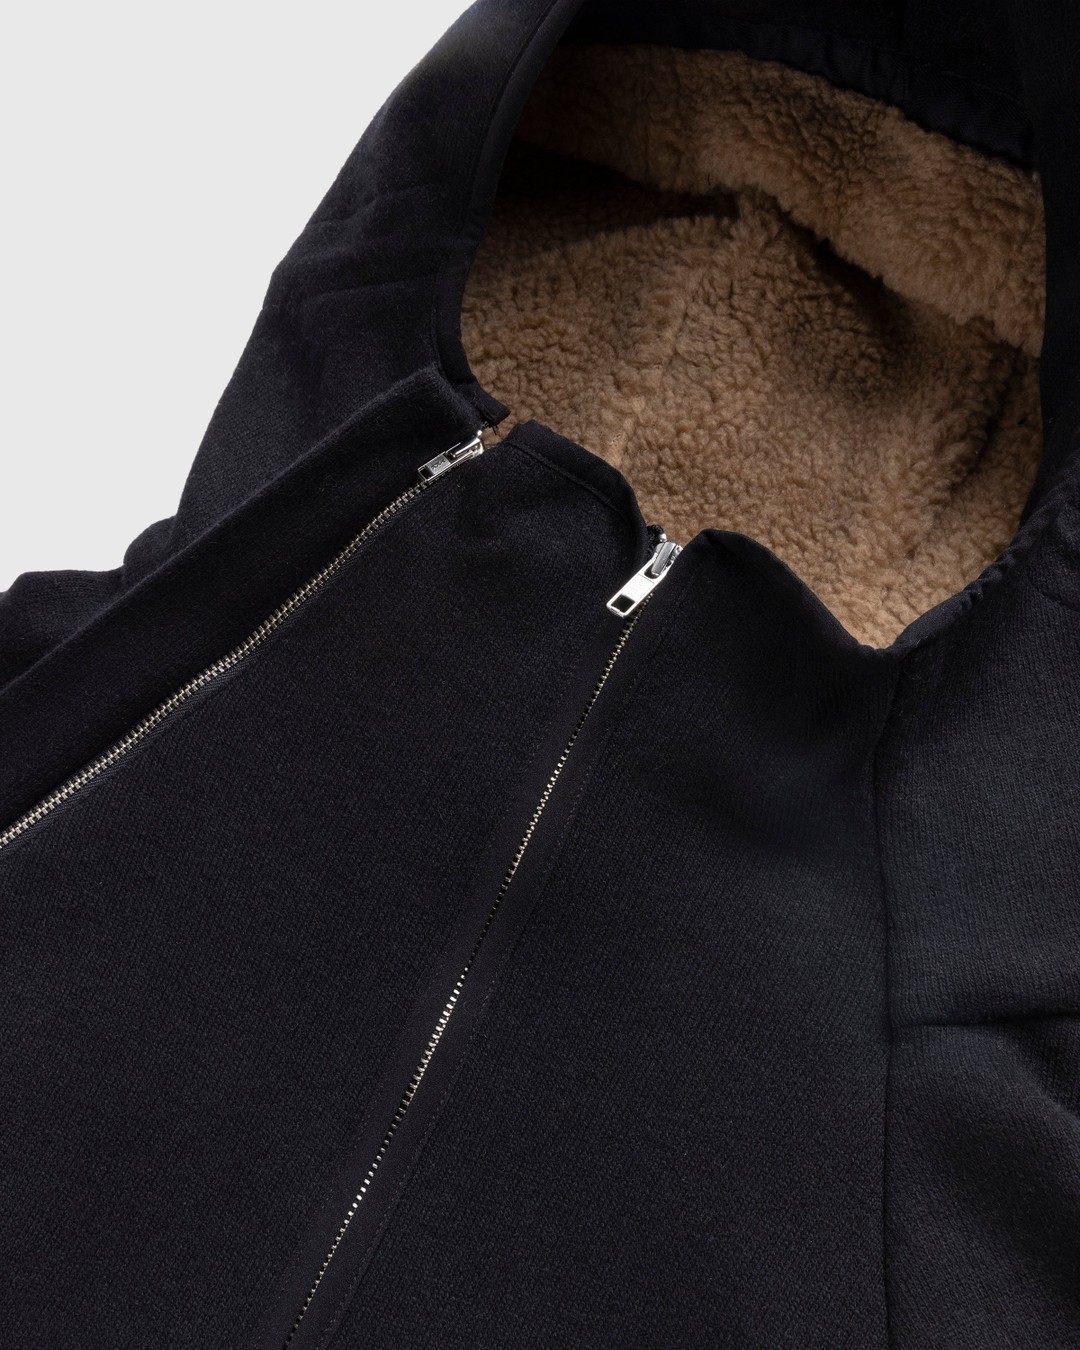 RANRA – Ooal Wool Jacket Black